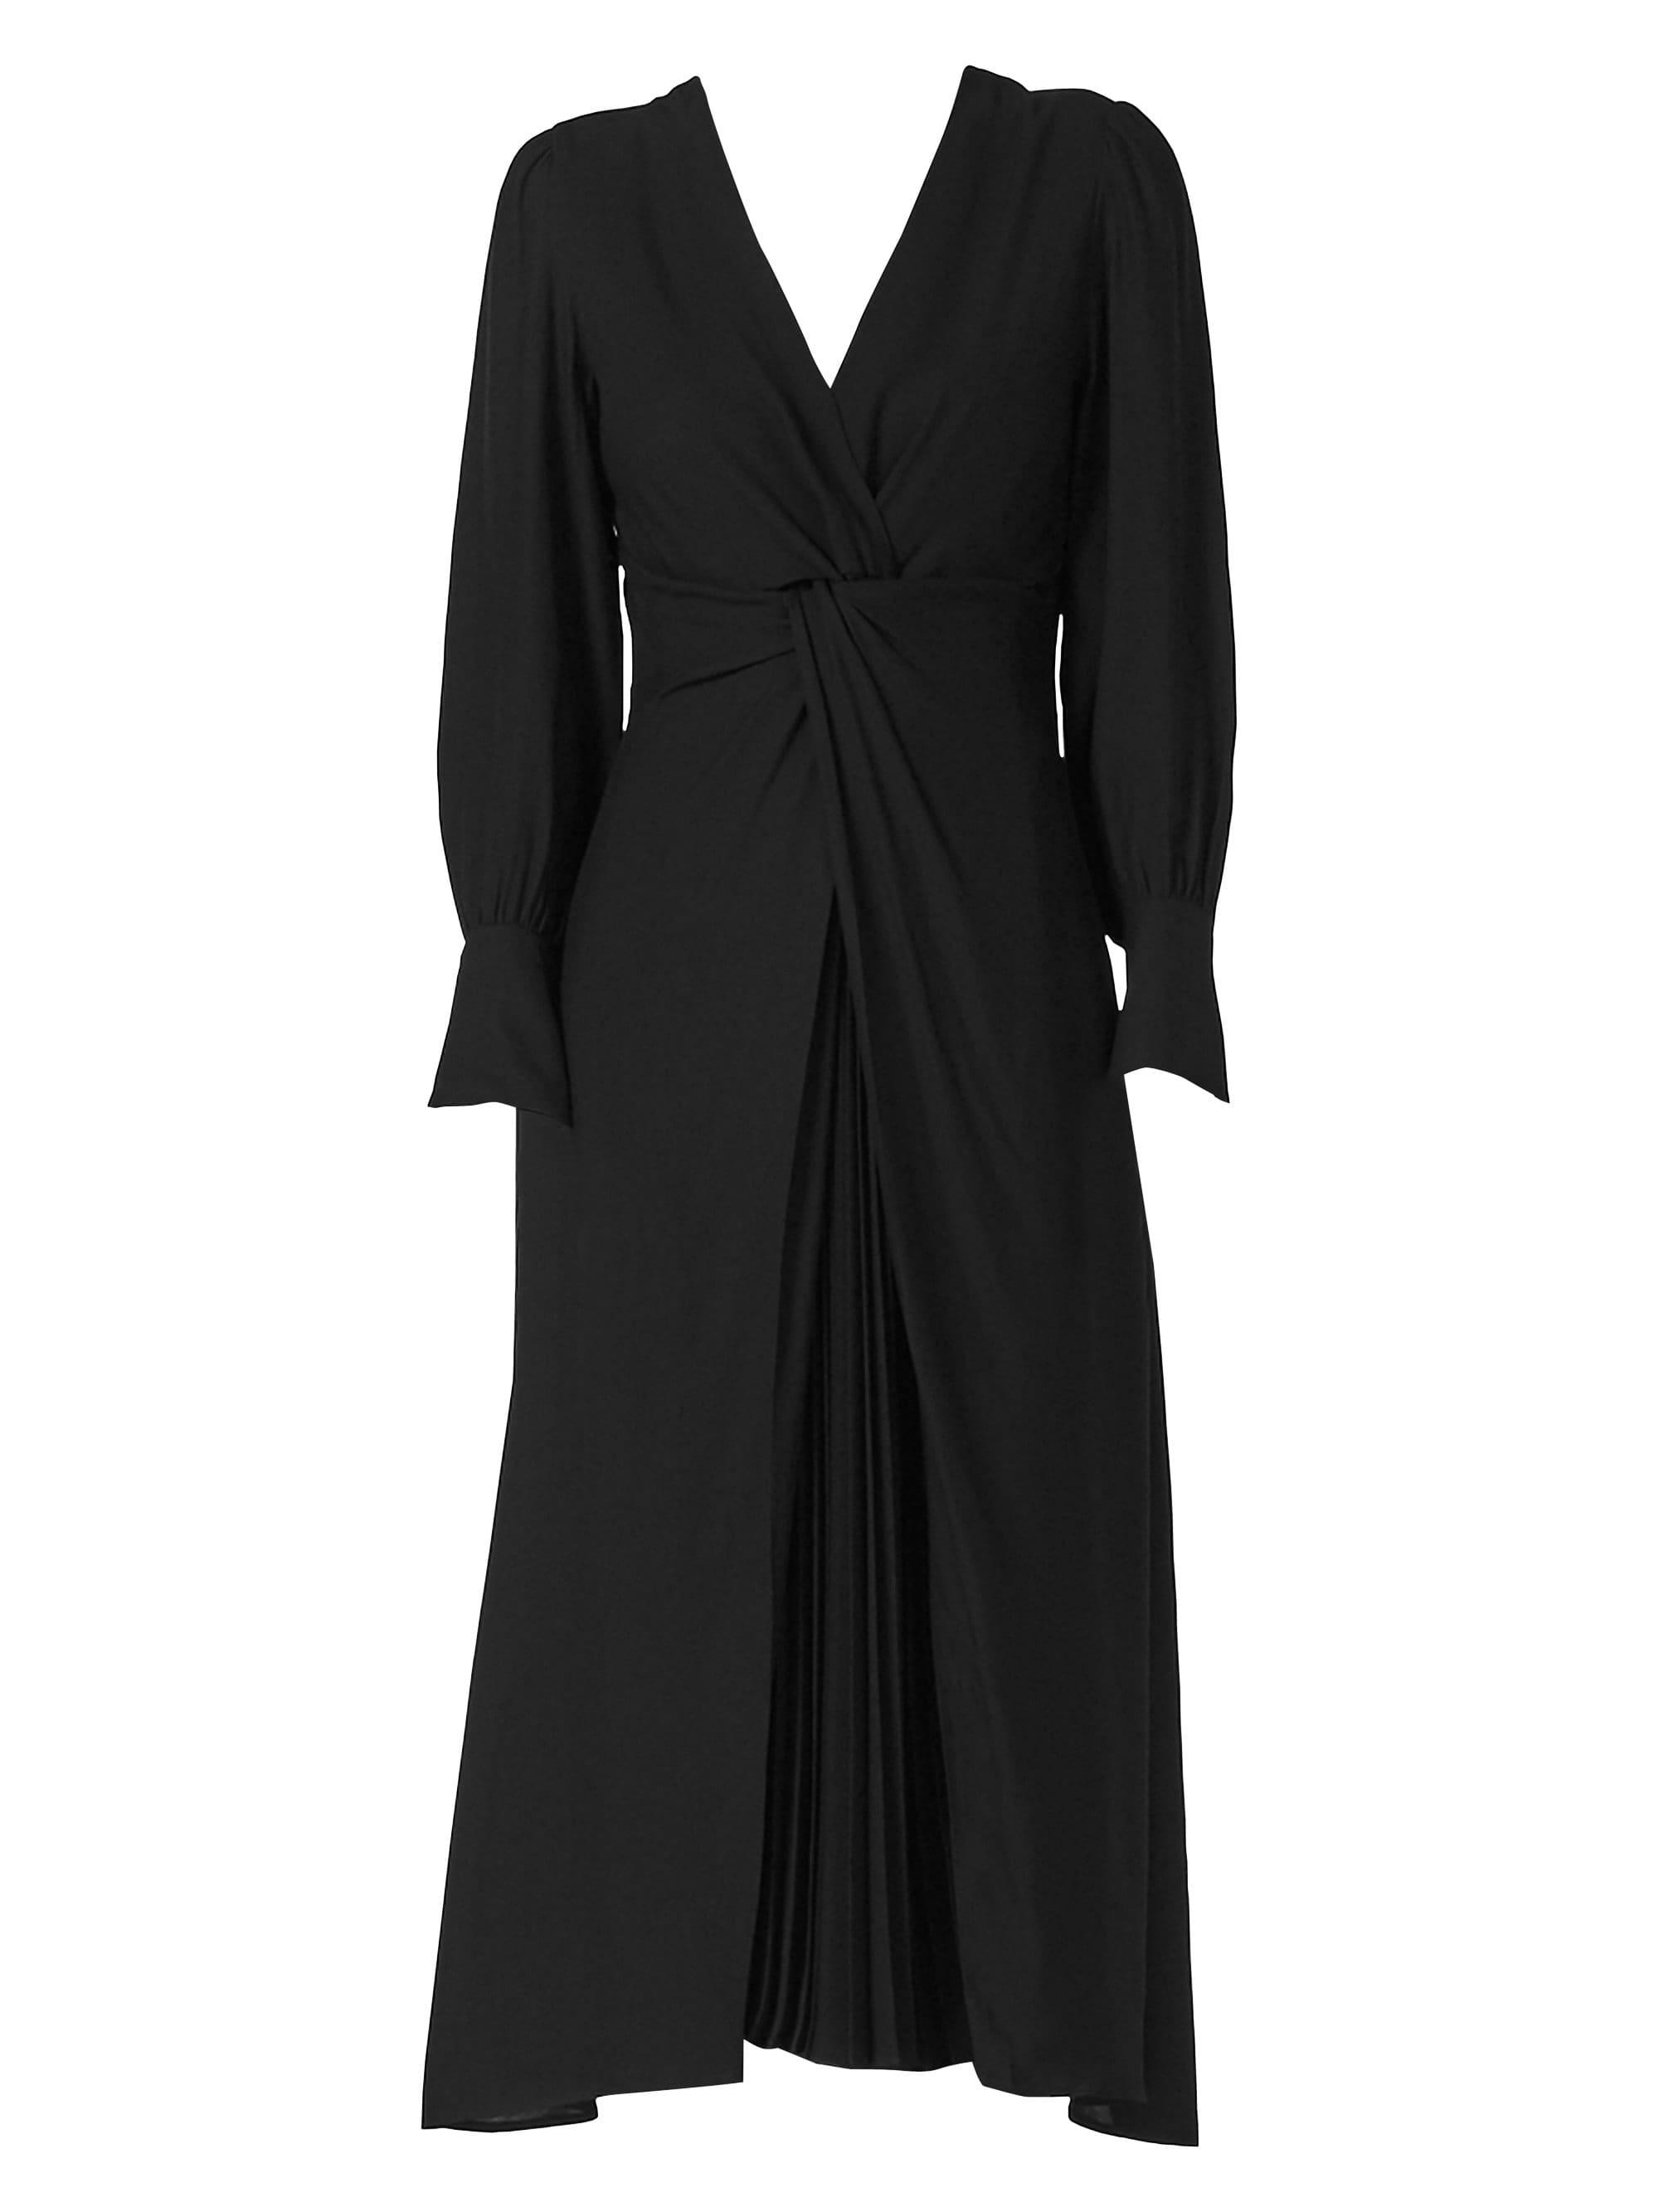 Sandro Minella Twist-knot Dress in Black - Lyst